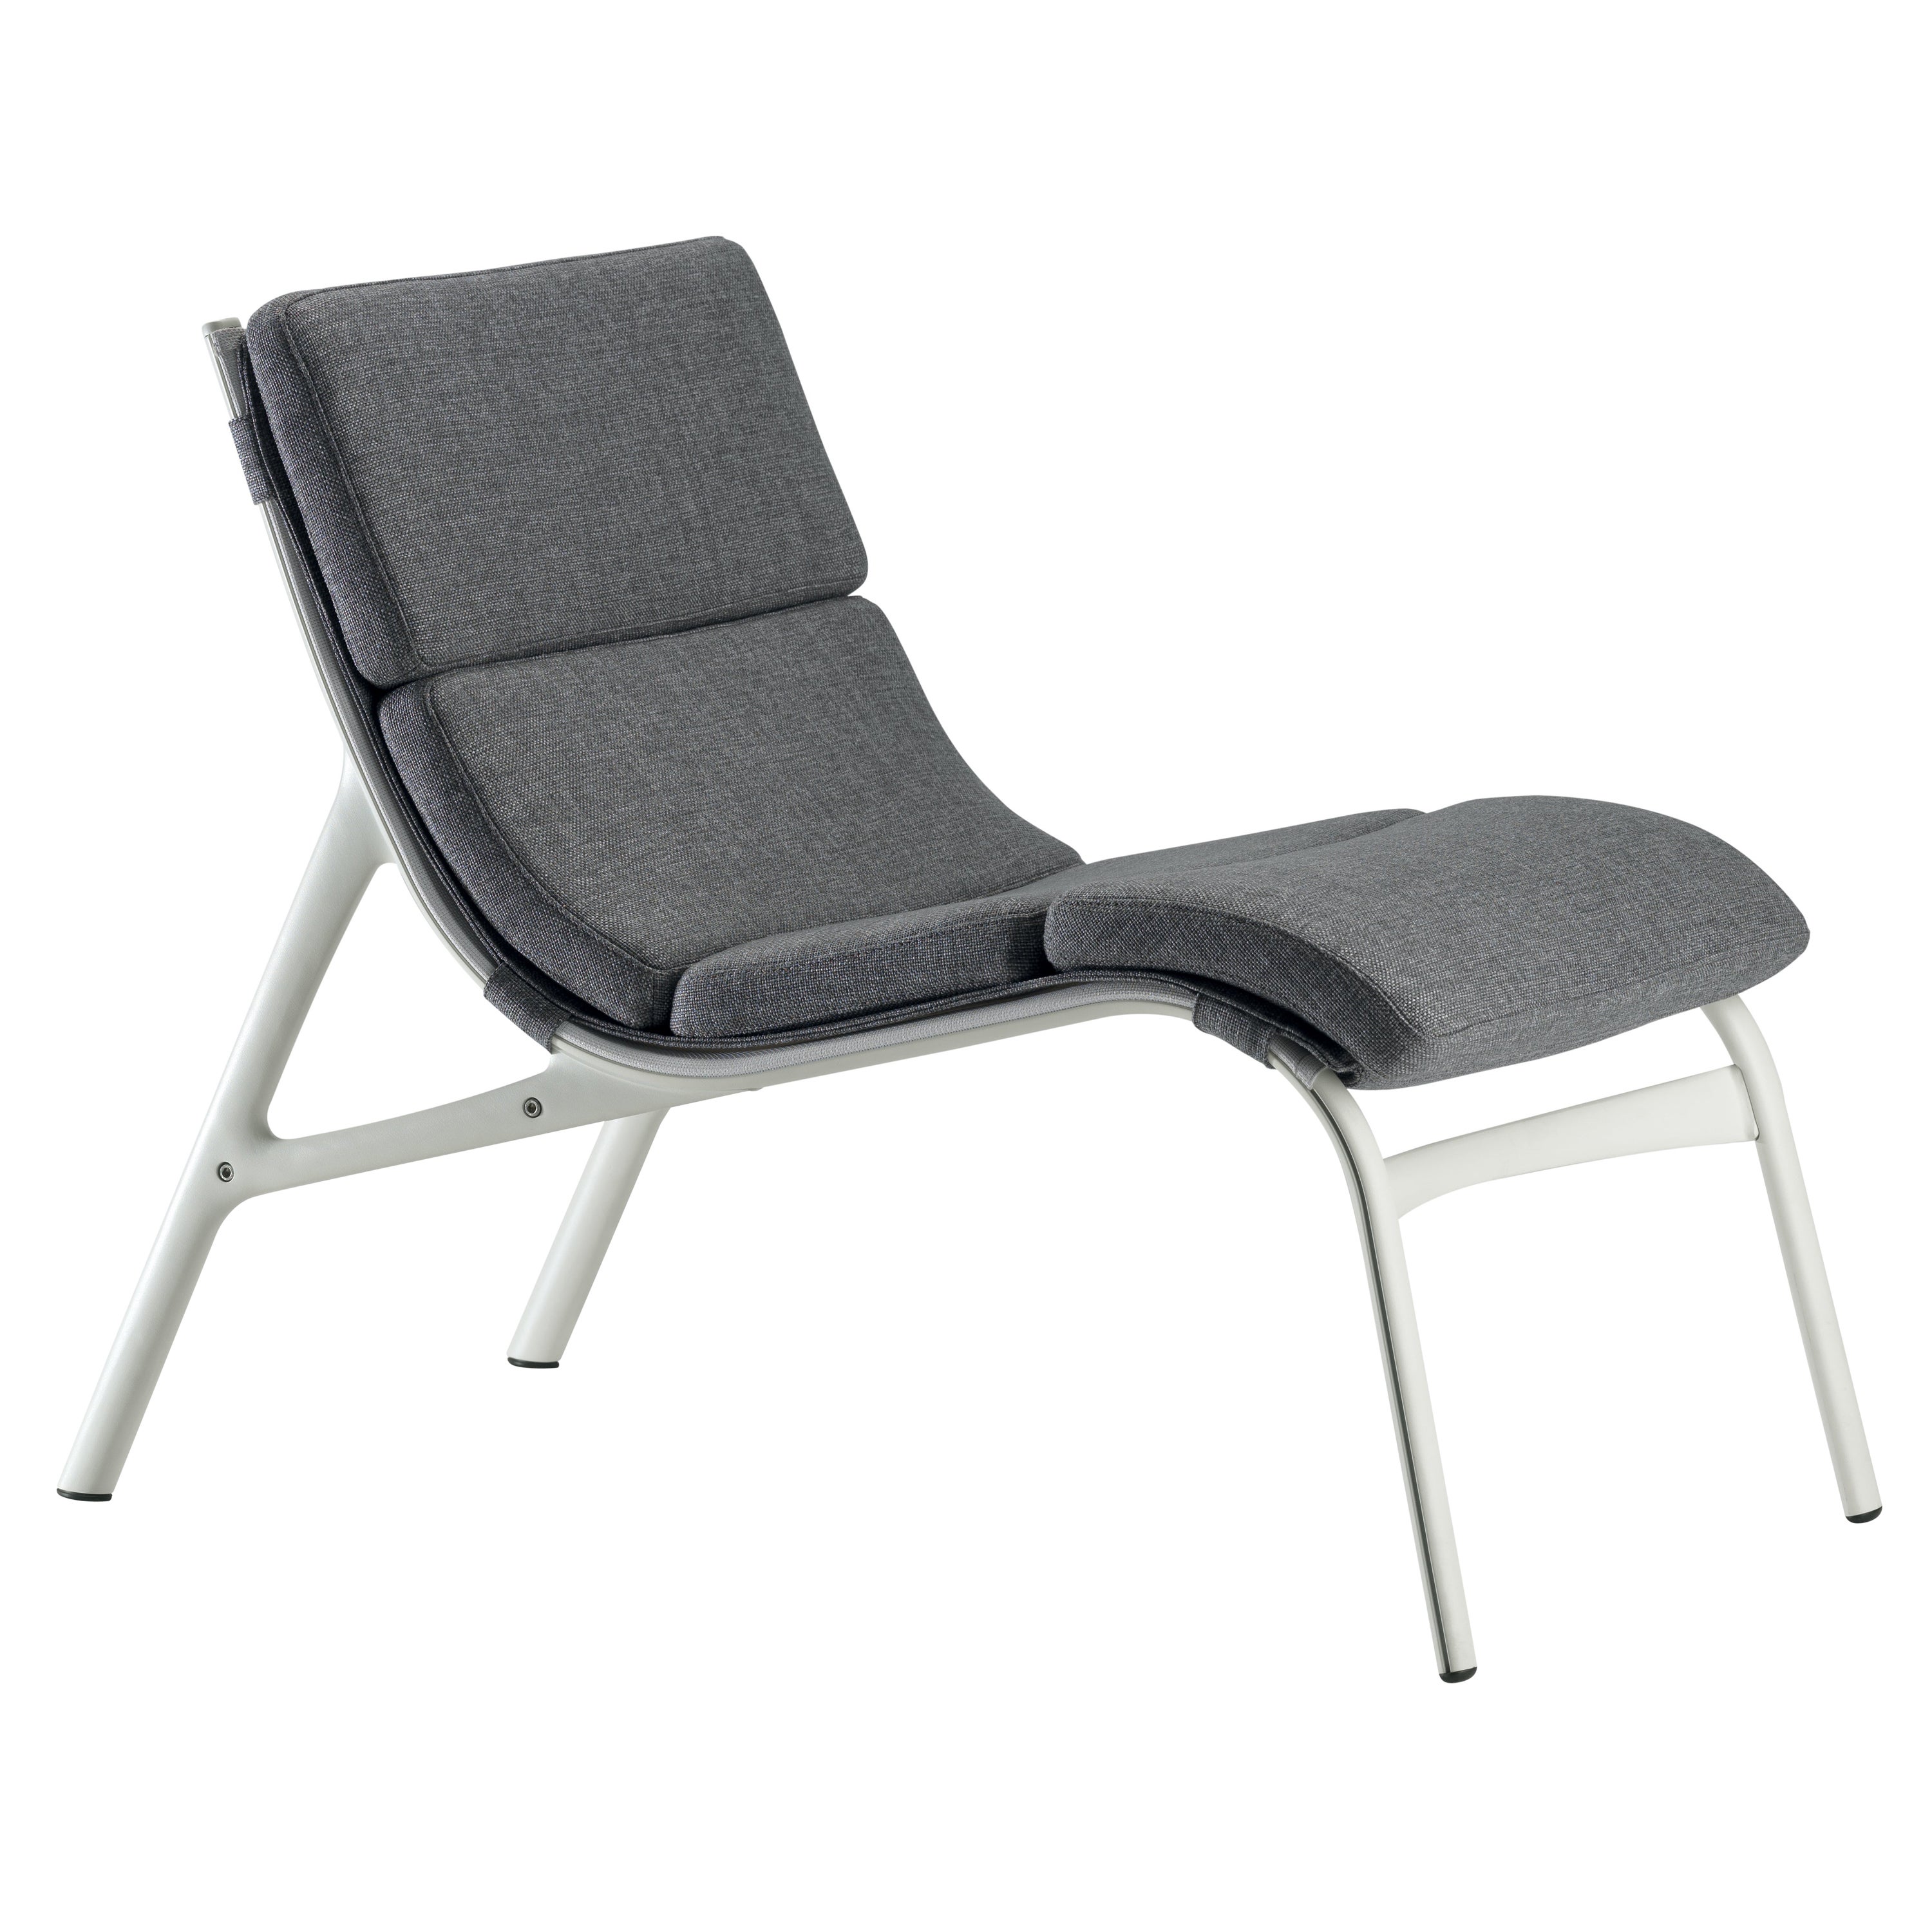 Alias 462, weicher Stuhl mit Armlehne aus weißem Mesh und grauem Sitz mit lackiertem Rahmen